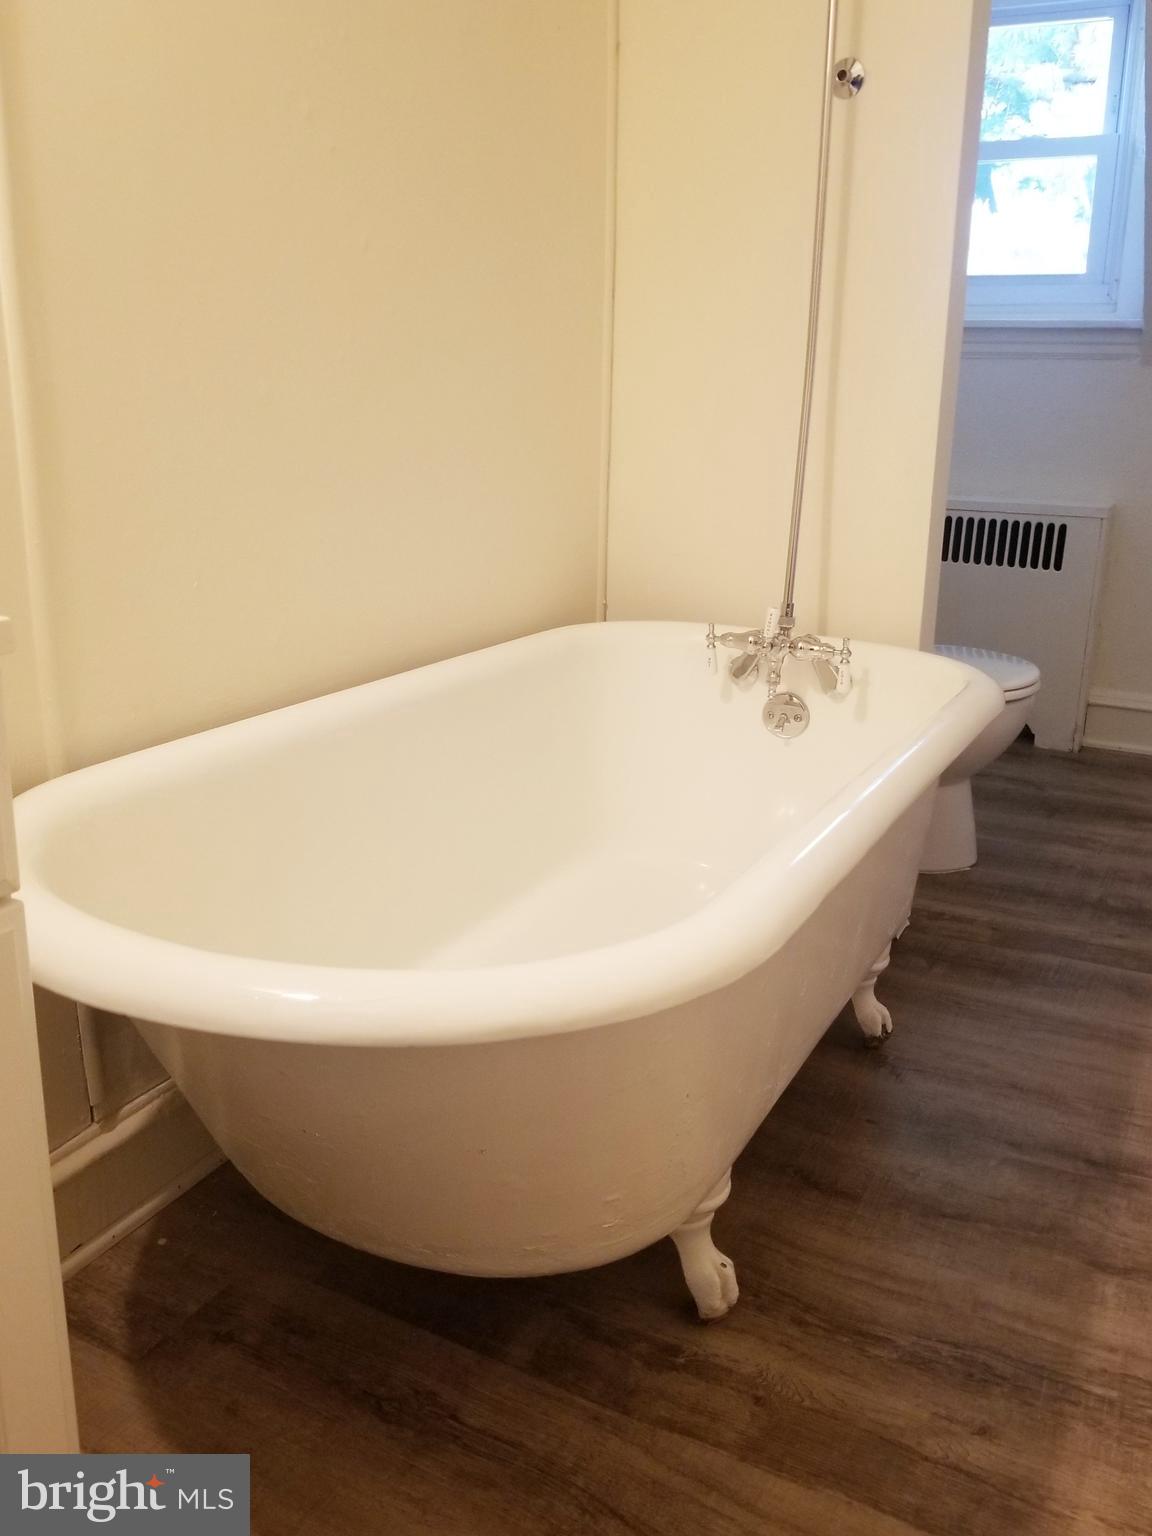 a white bath tub sitting in a bathroom